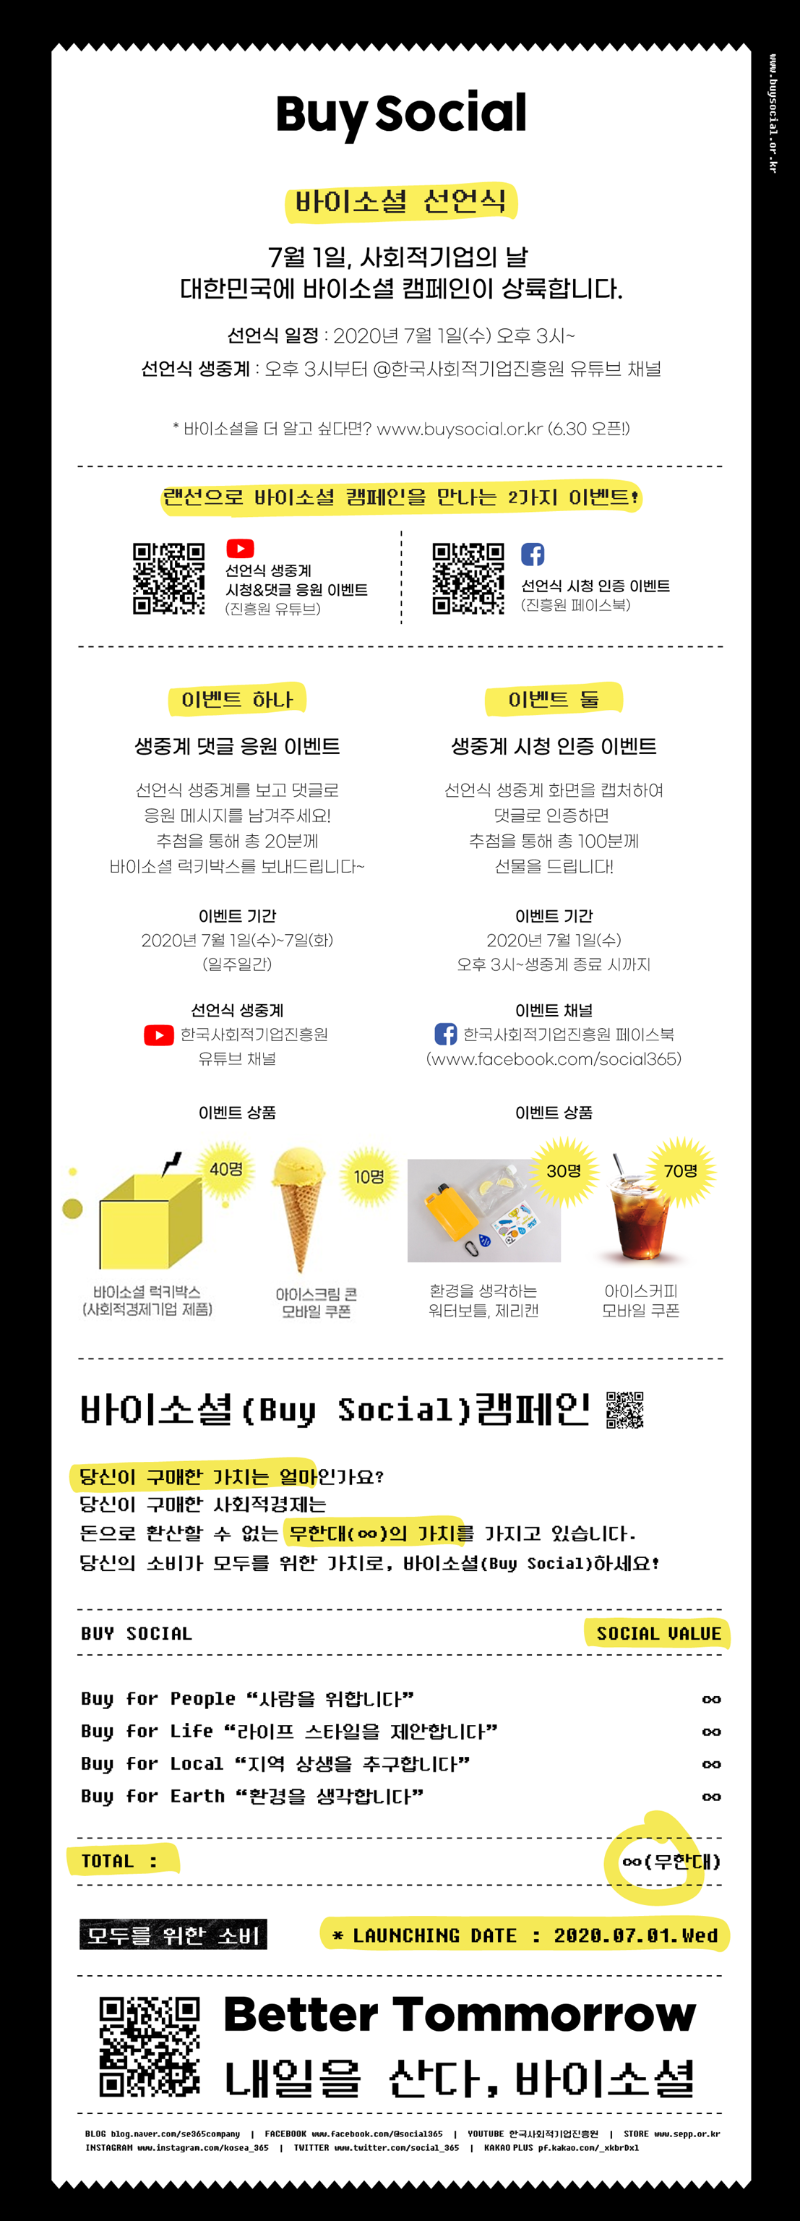 바이소셜 선언식 이벤트 웹자보(일상경품수정).png